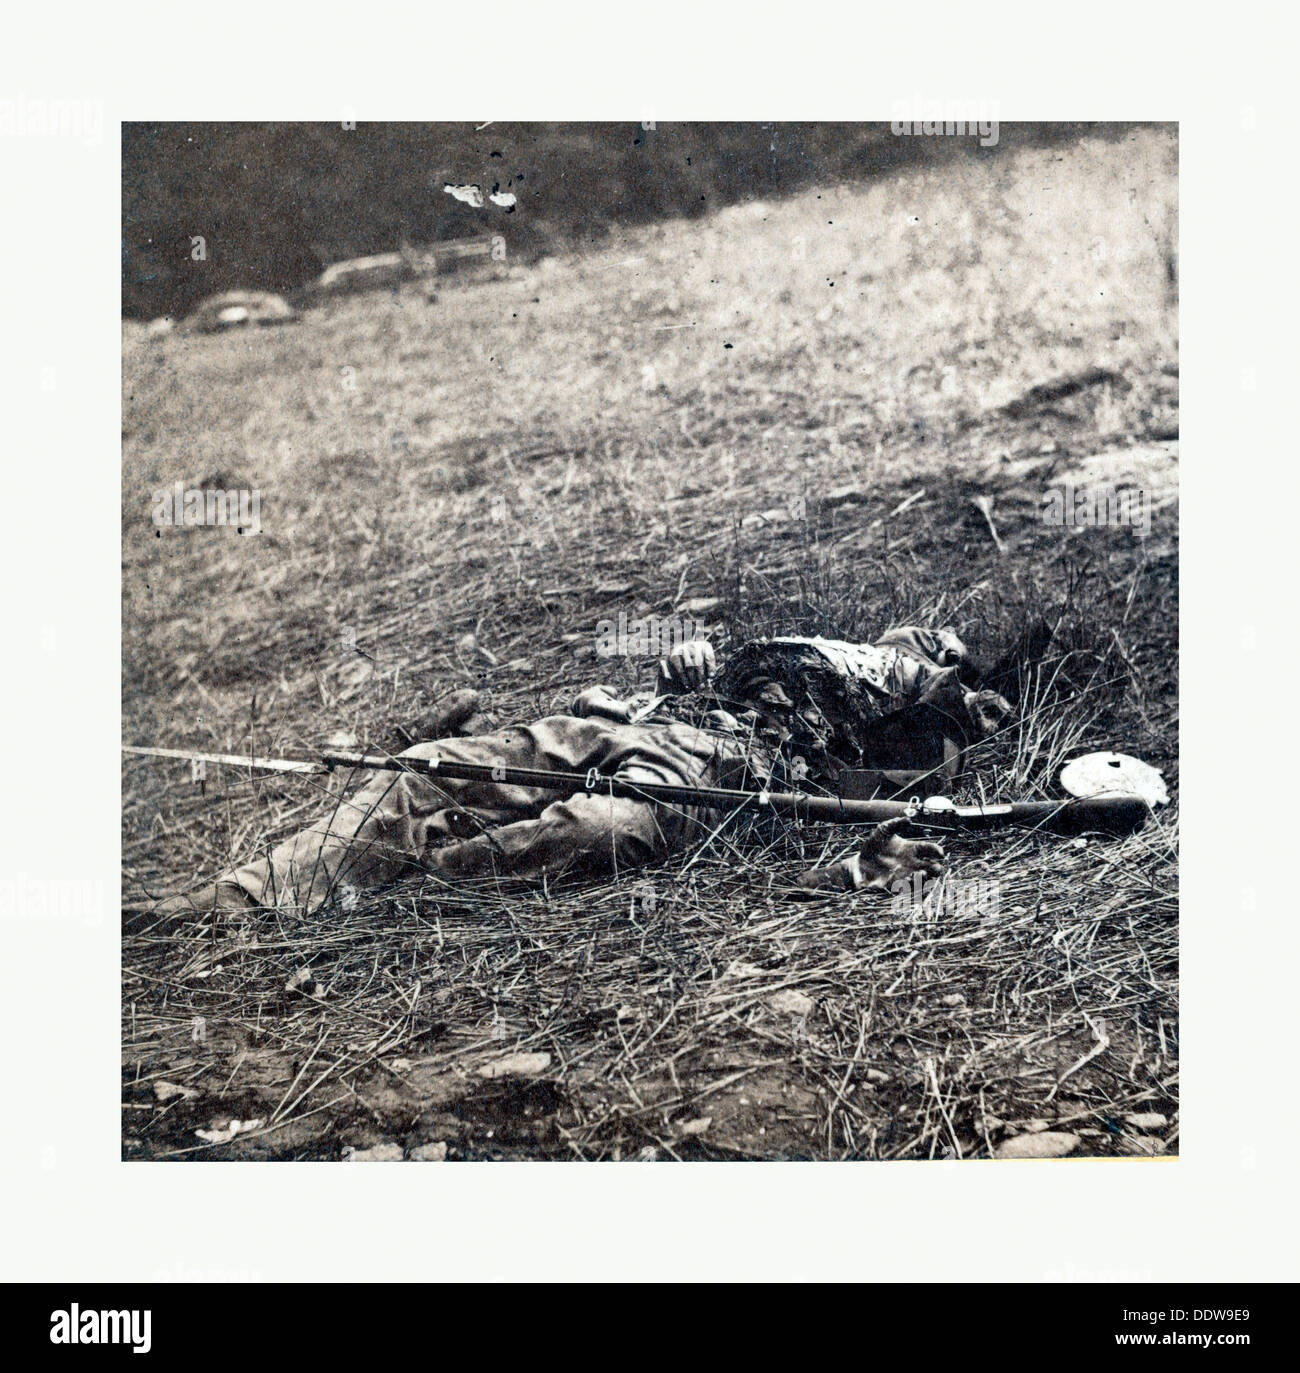 Guerra Civil americana: la guerra efecto de una shell en un soldado confederado en la batalla de Gettysburg, los restos de un soldado muerto Foto de stock